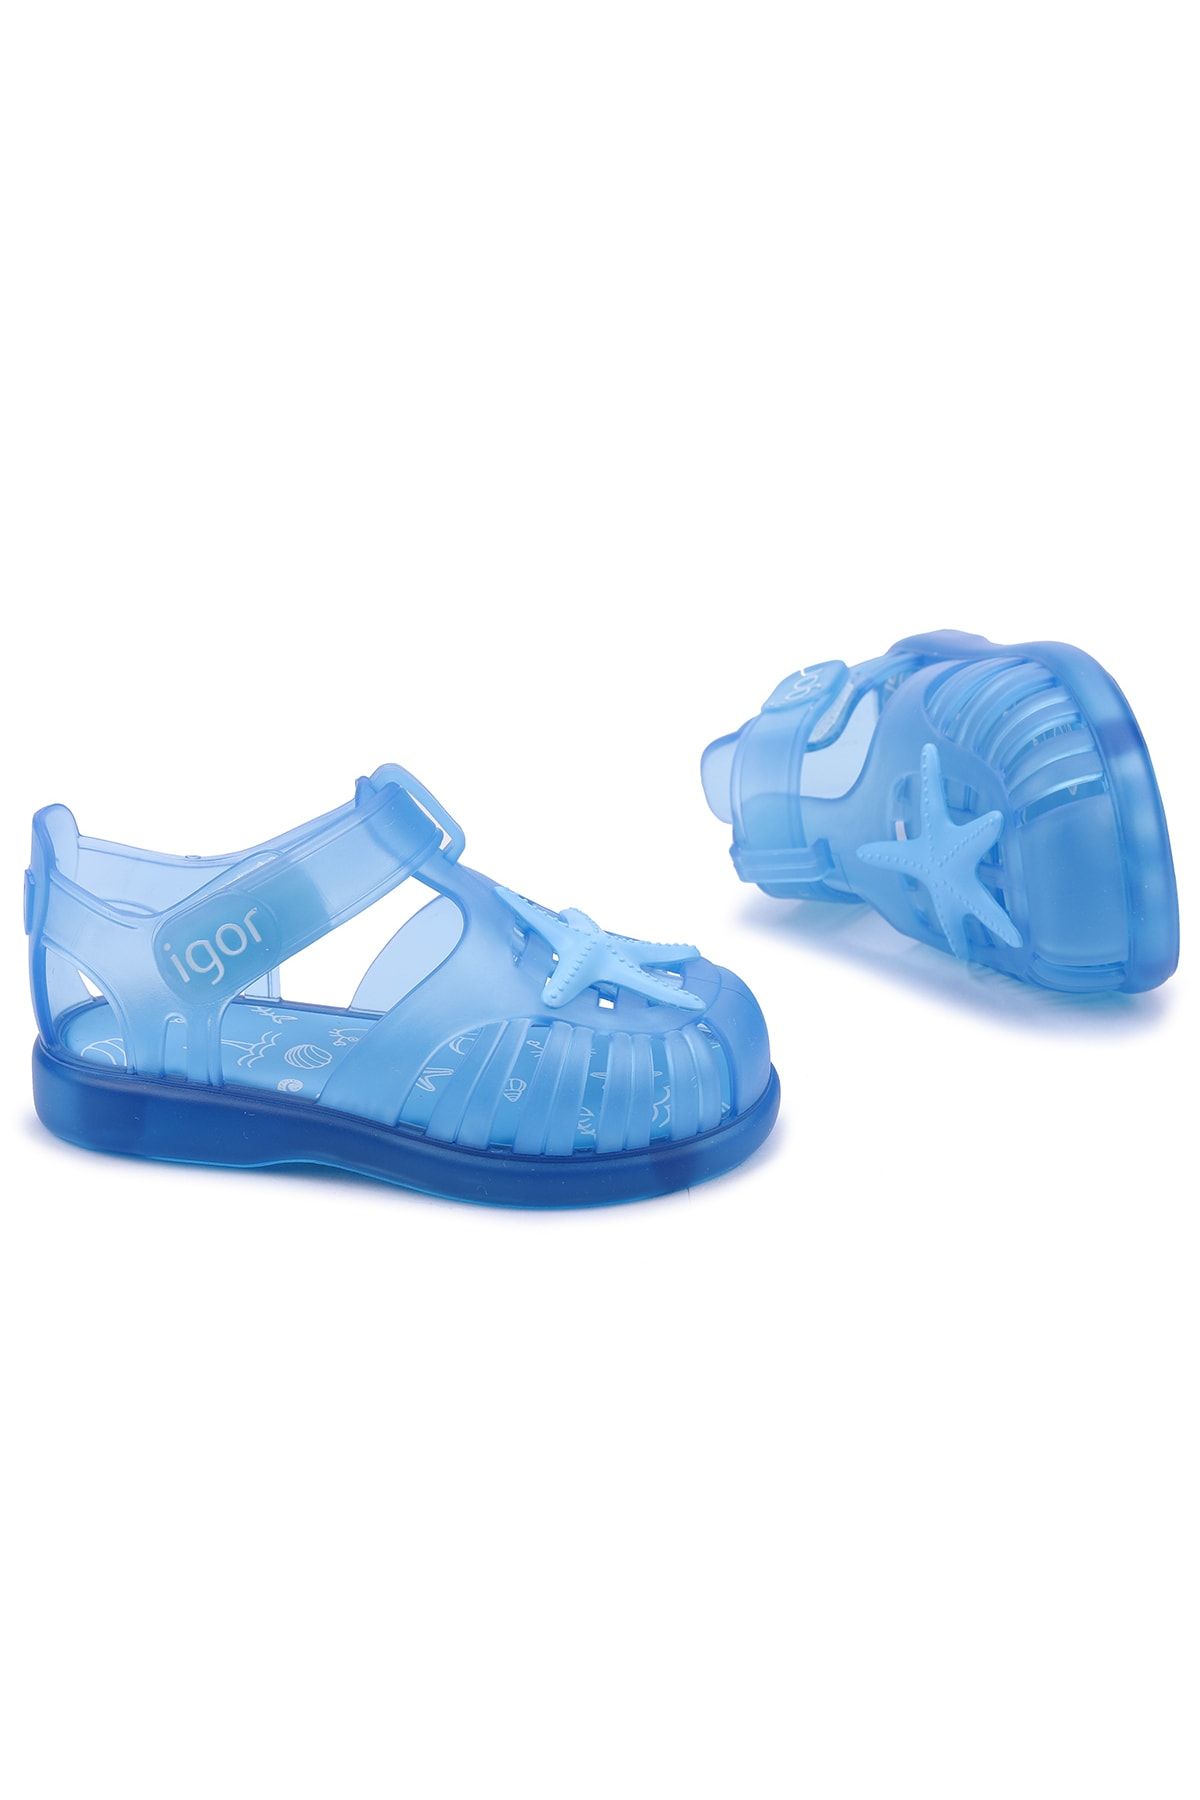 IGOR S10234 Tobby Bantlı Deniz Yıldızı Çocuk Mavi Sandalet